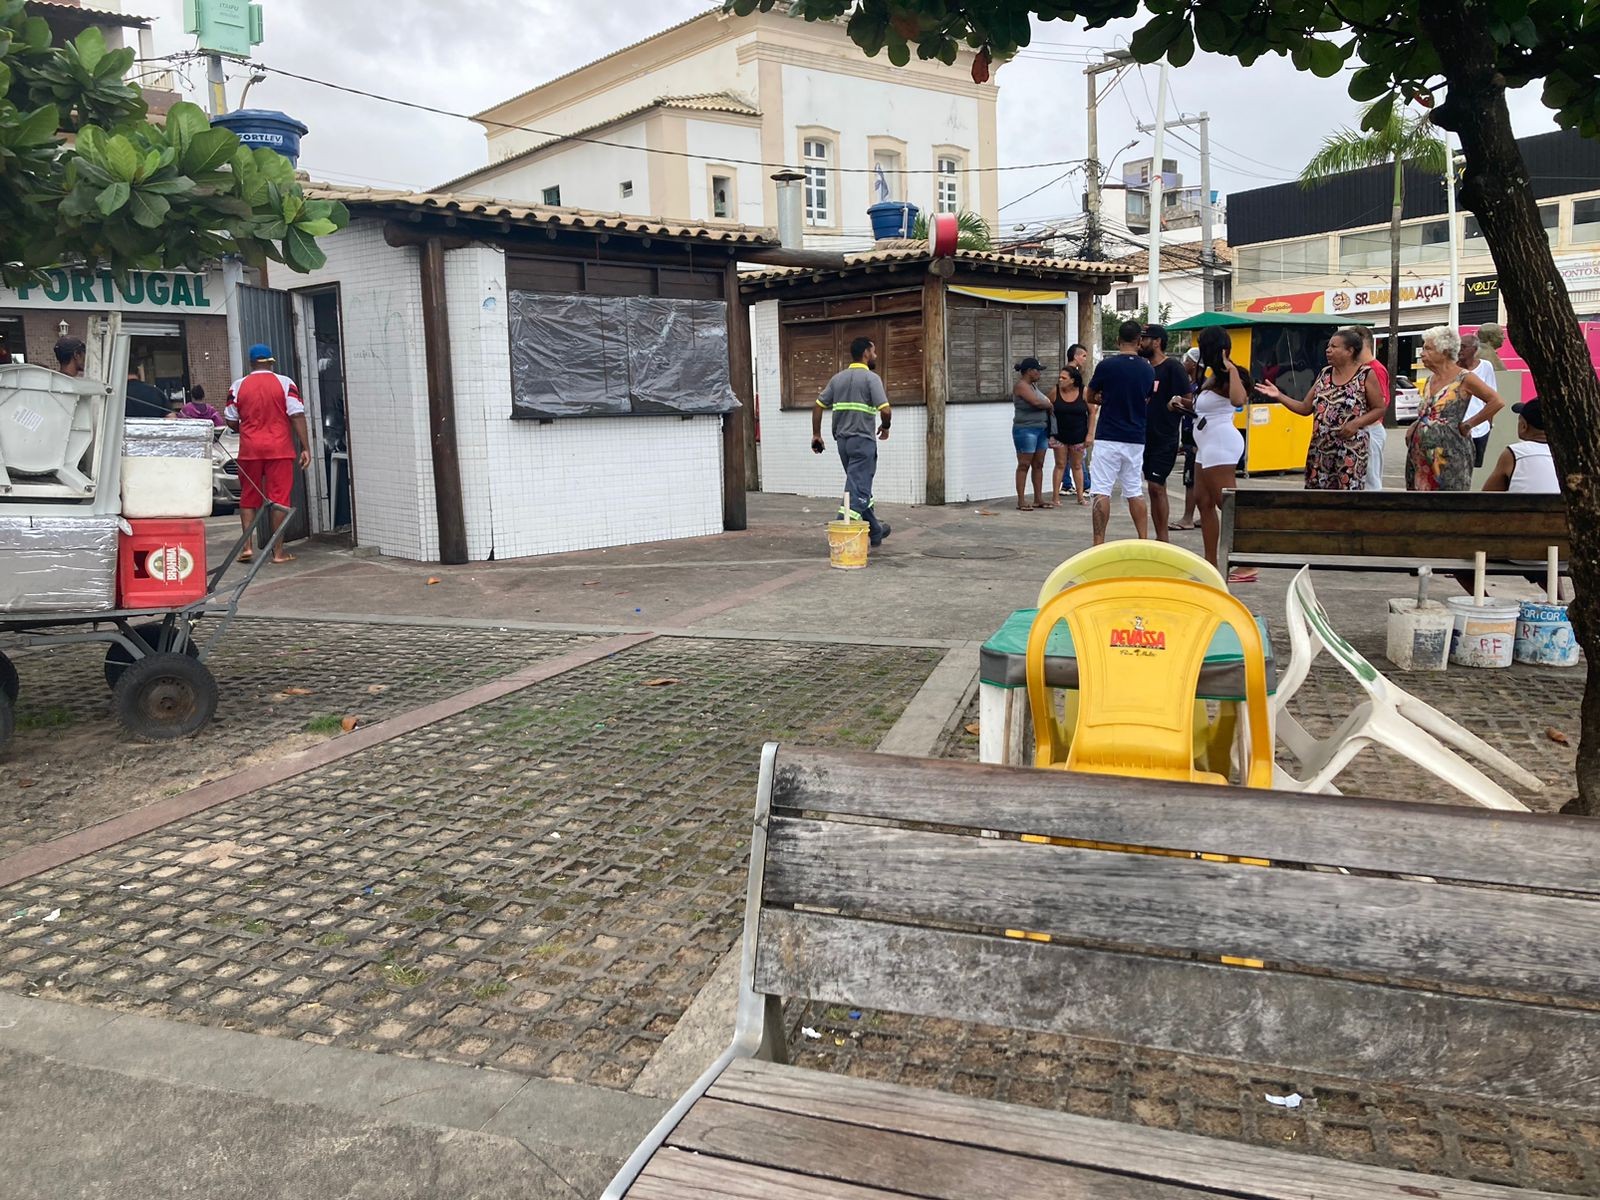 Homem é morto a tiros no bairro de Itapuã, em Salvador; baleado teria tentado assaltar motociclista, dizem testemunhas